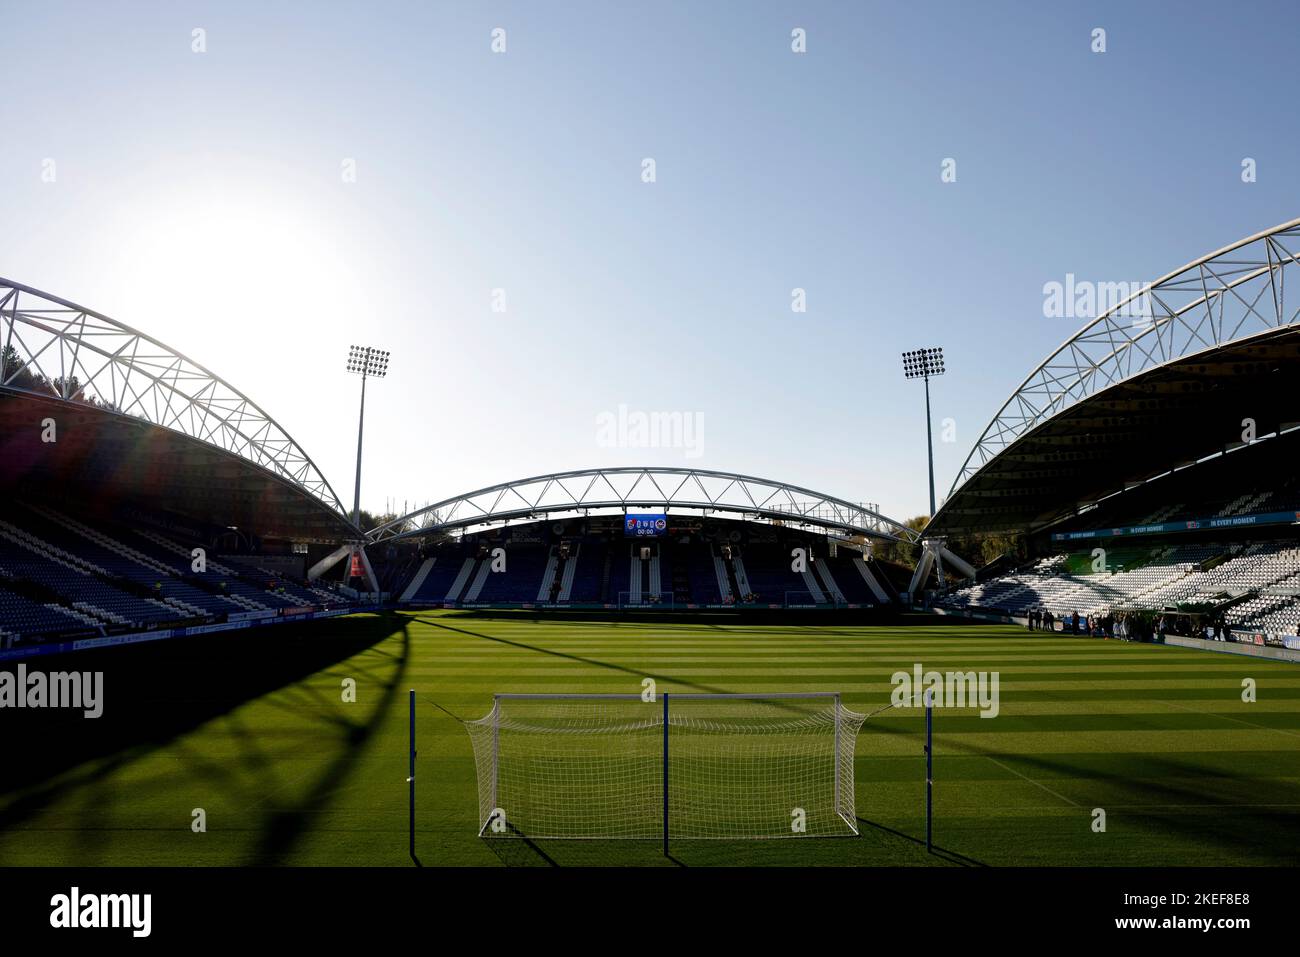 Una vista generale del John Smith's Stadium di Huddersfield Town prima della partita del campionato Sky Bet al John Smith's Stadium, Huddersfield. Data immagine: Sabato 12 novembre 2022. Foto Stock